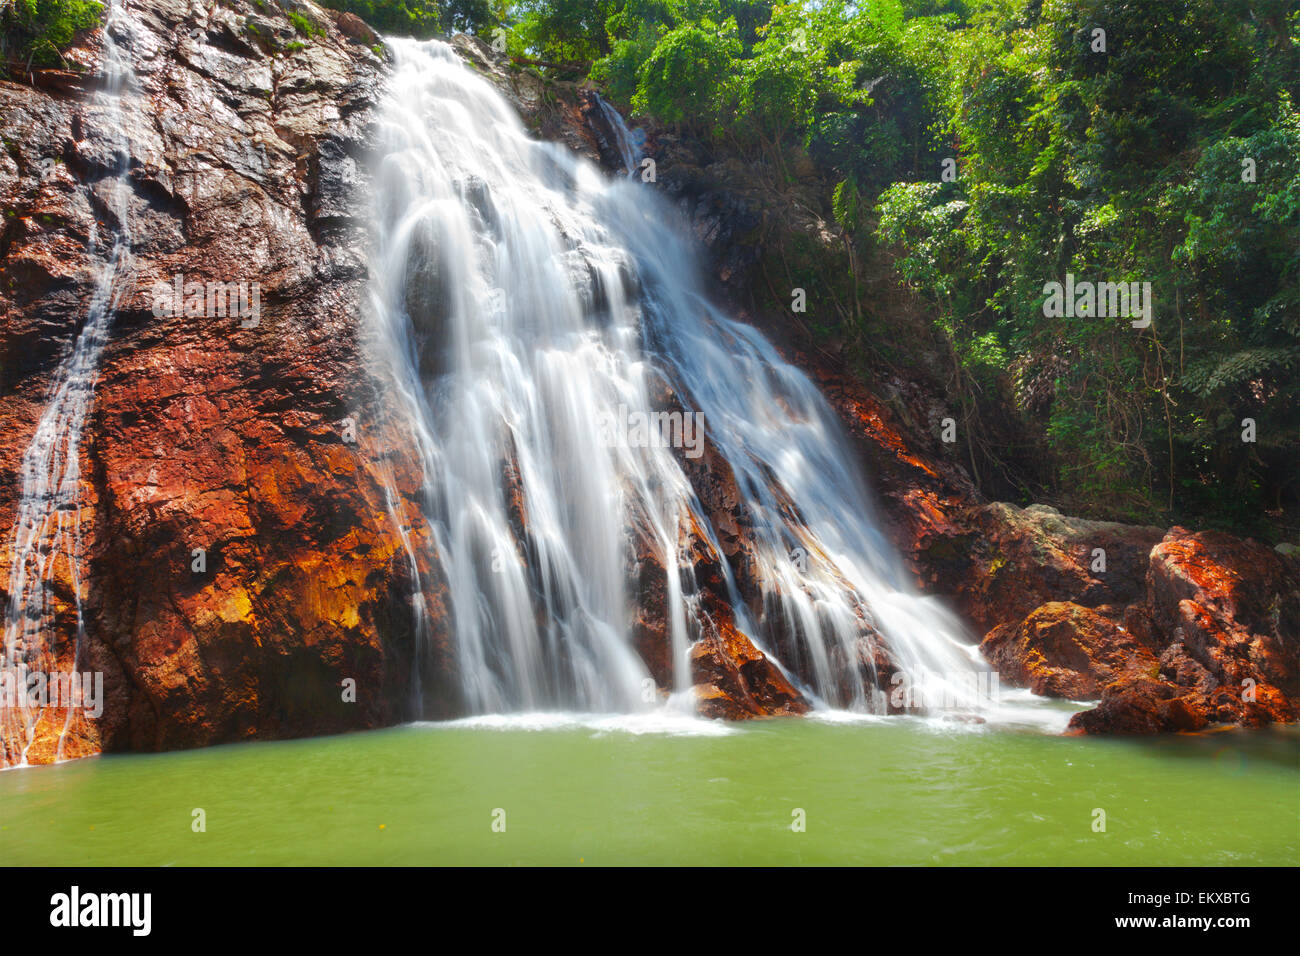 Na Muang 1 waterfall, Koh Samui, Thailand Stock Photo